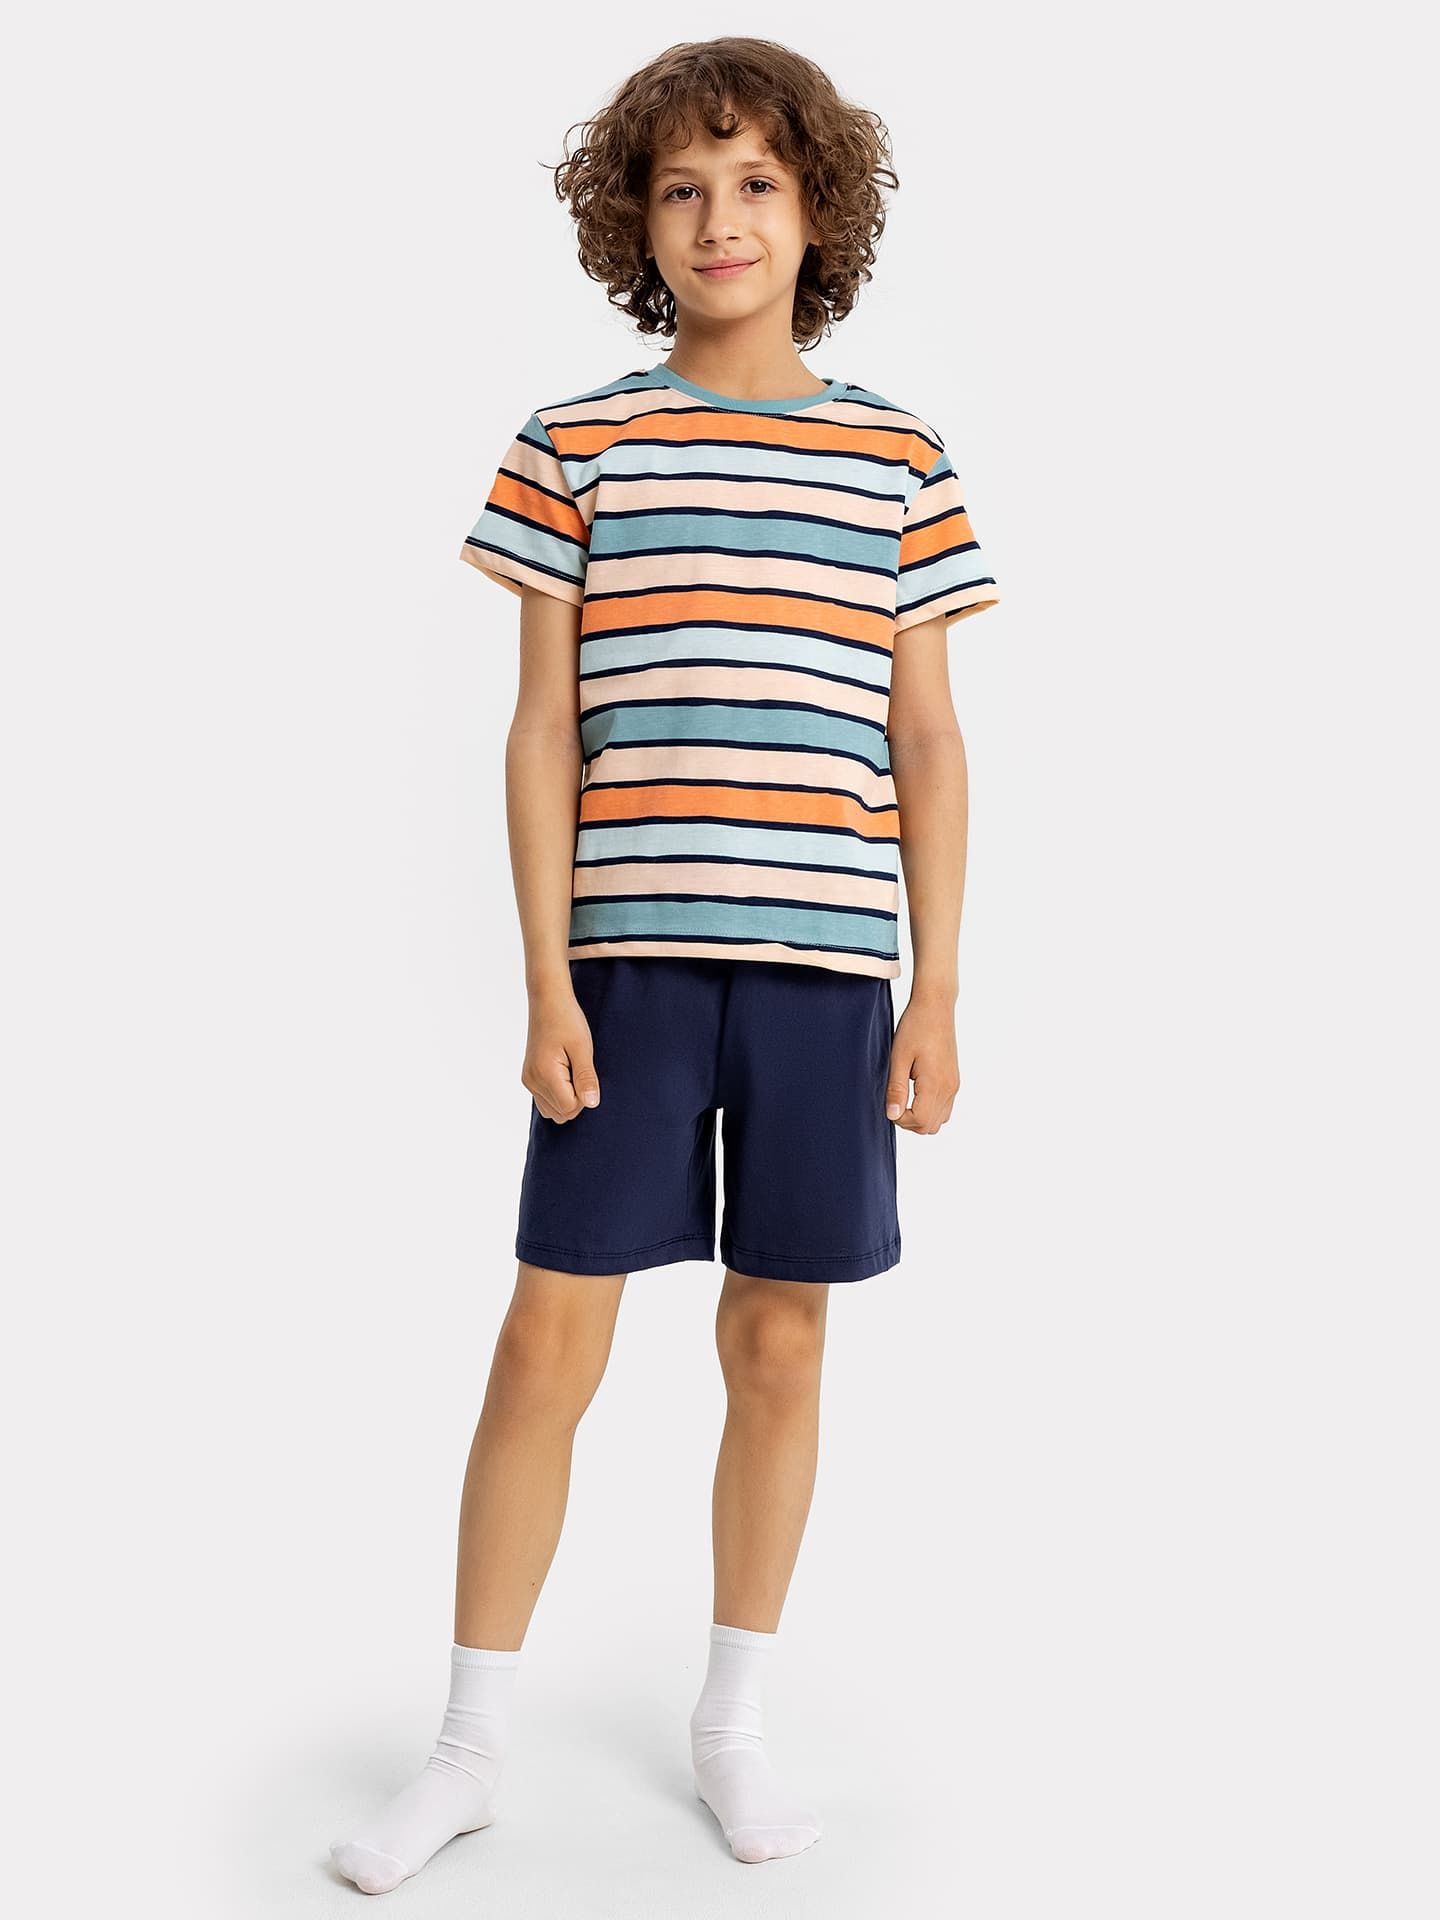 Комплект для мальчиков (футболка в цветную полоску, синие шорты)